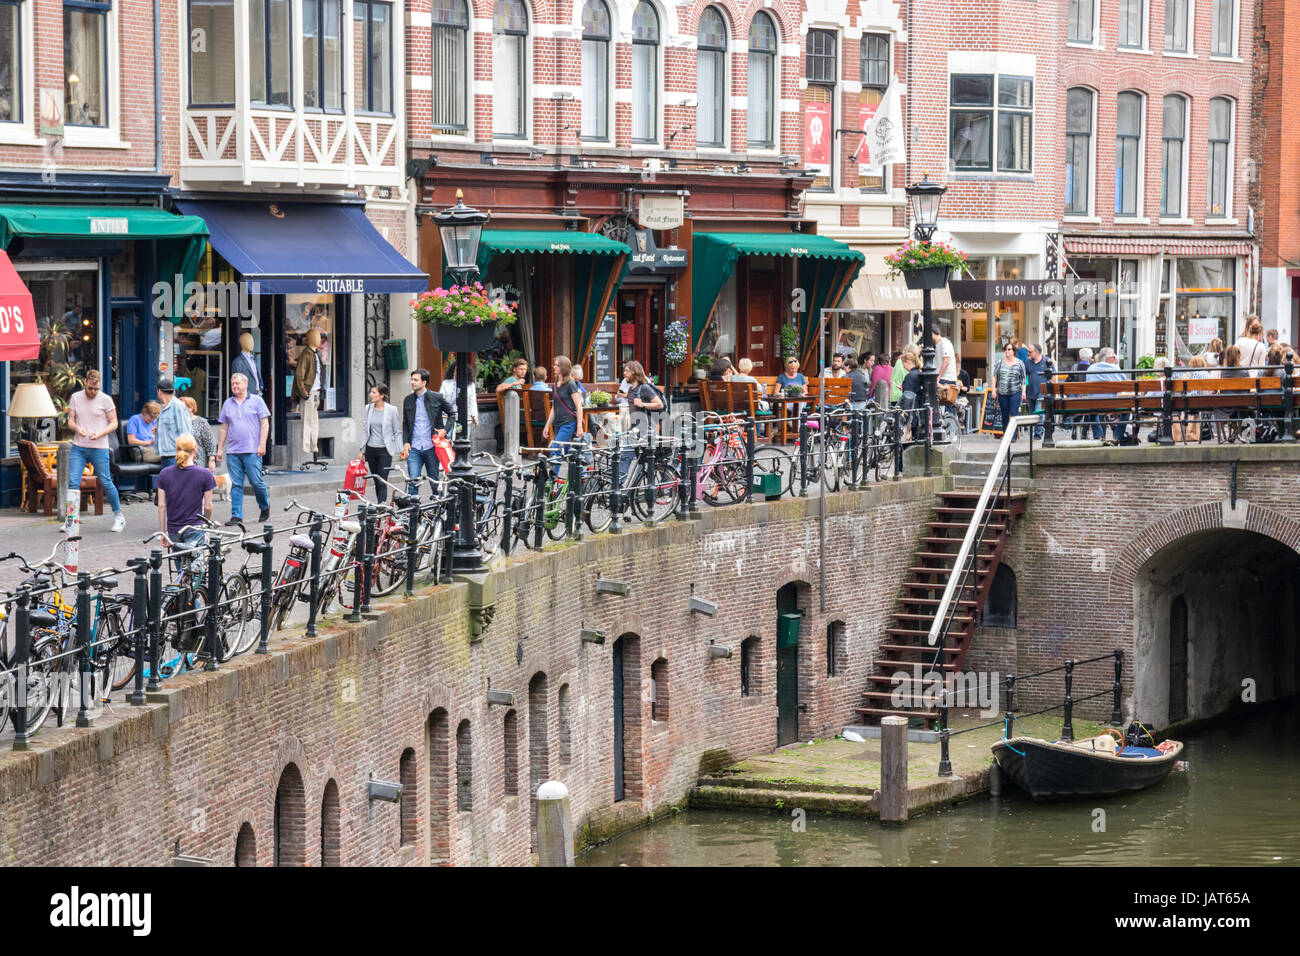 Blick auf die historische Innenstadt mit Leute an der Oudegracht (alten Kanal) und dem Vismarkt Straße (Fischmarkt). Utrecht, Niederlande. Stockfoto